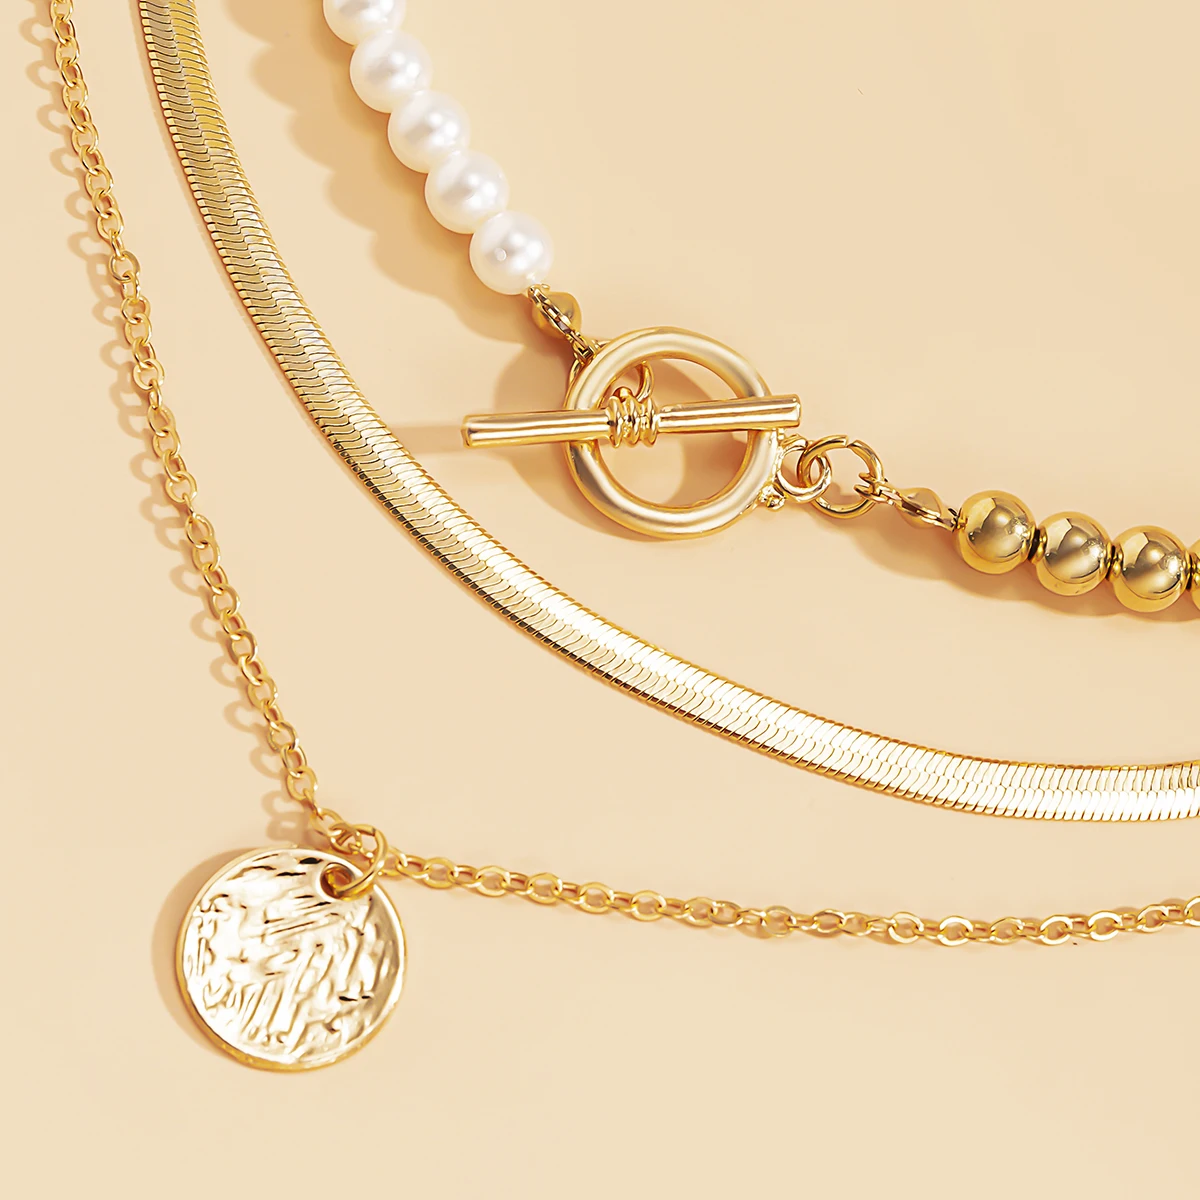 Многослойная цепочка чокер SHIXIN с жемчужинами ожерелье для женщин змея на шею - Фото №1